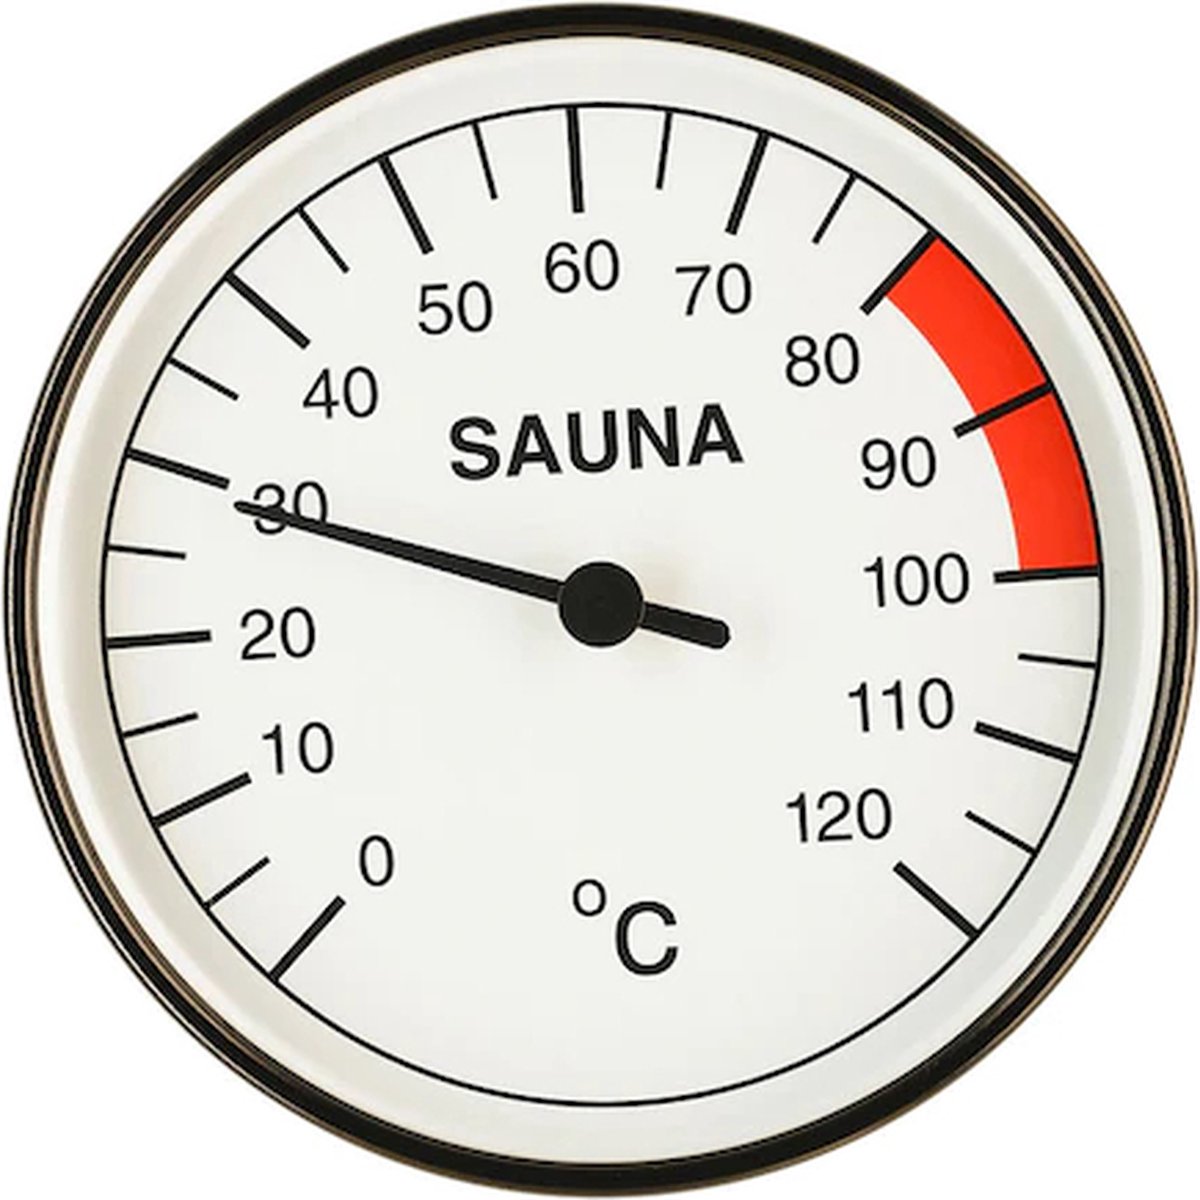 Infraworld sauna thermometer - Infraworld